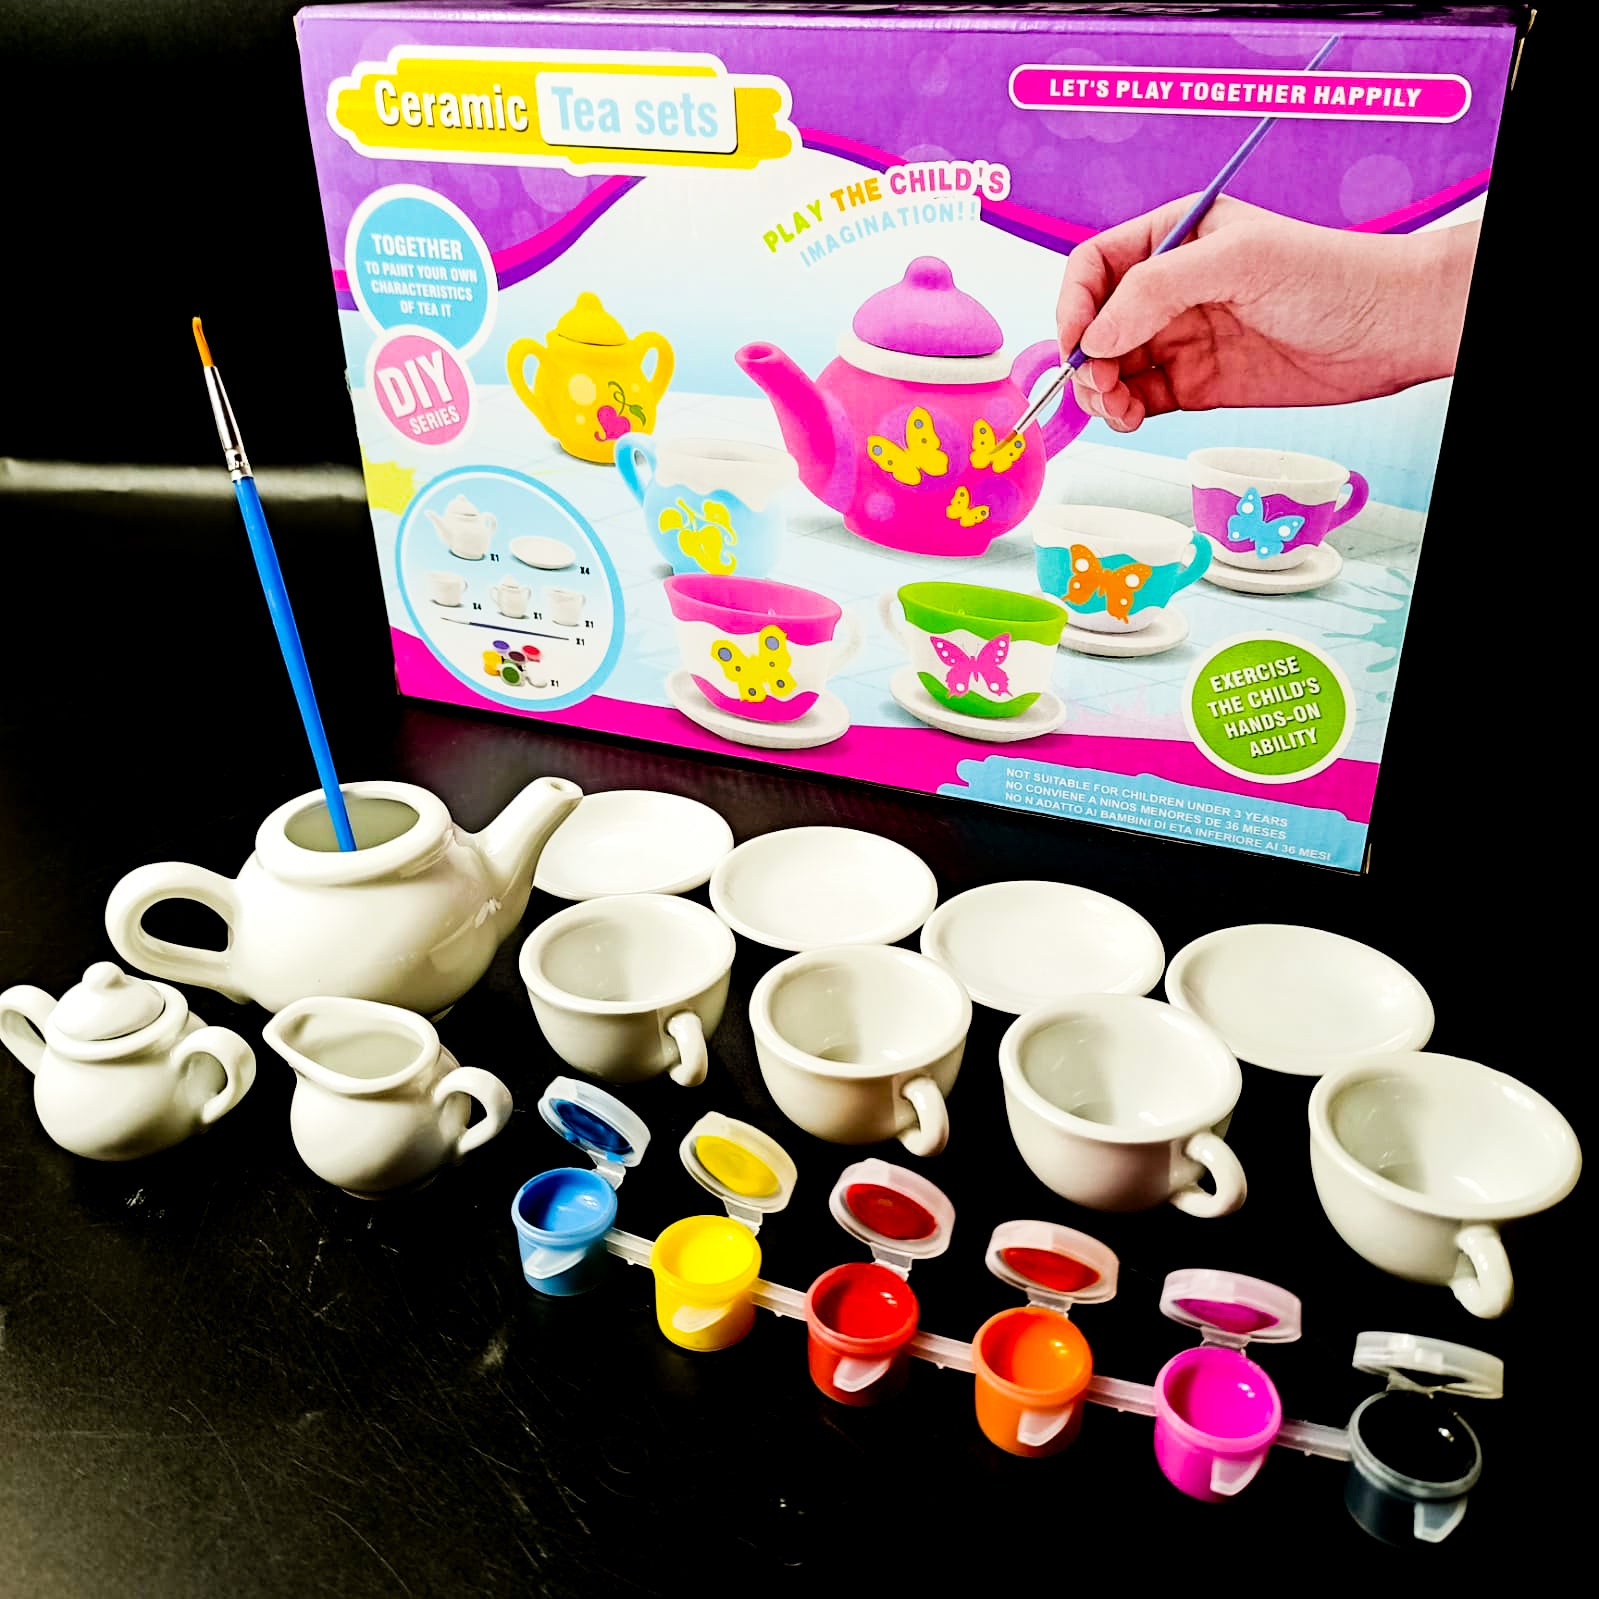 Ceramic Tea Set, 18 Pieces With Paints For Kids